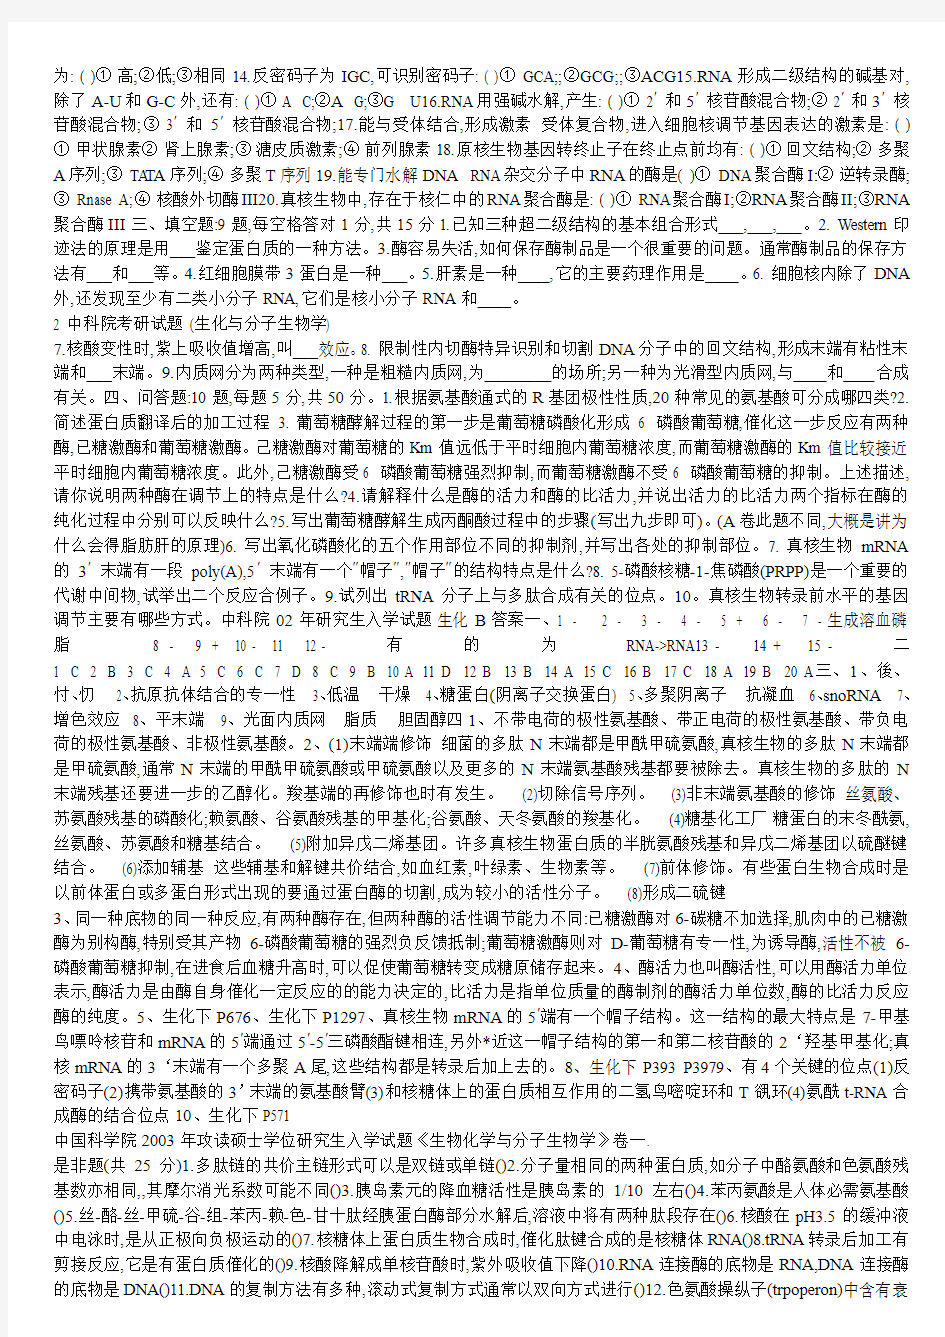 上海中科院02---07生化所生化与分子考研试题(含答案)